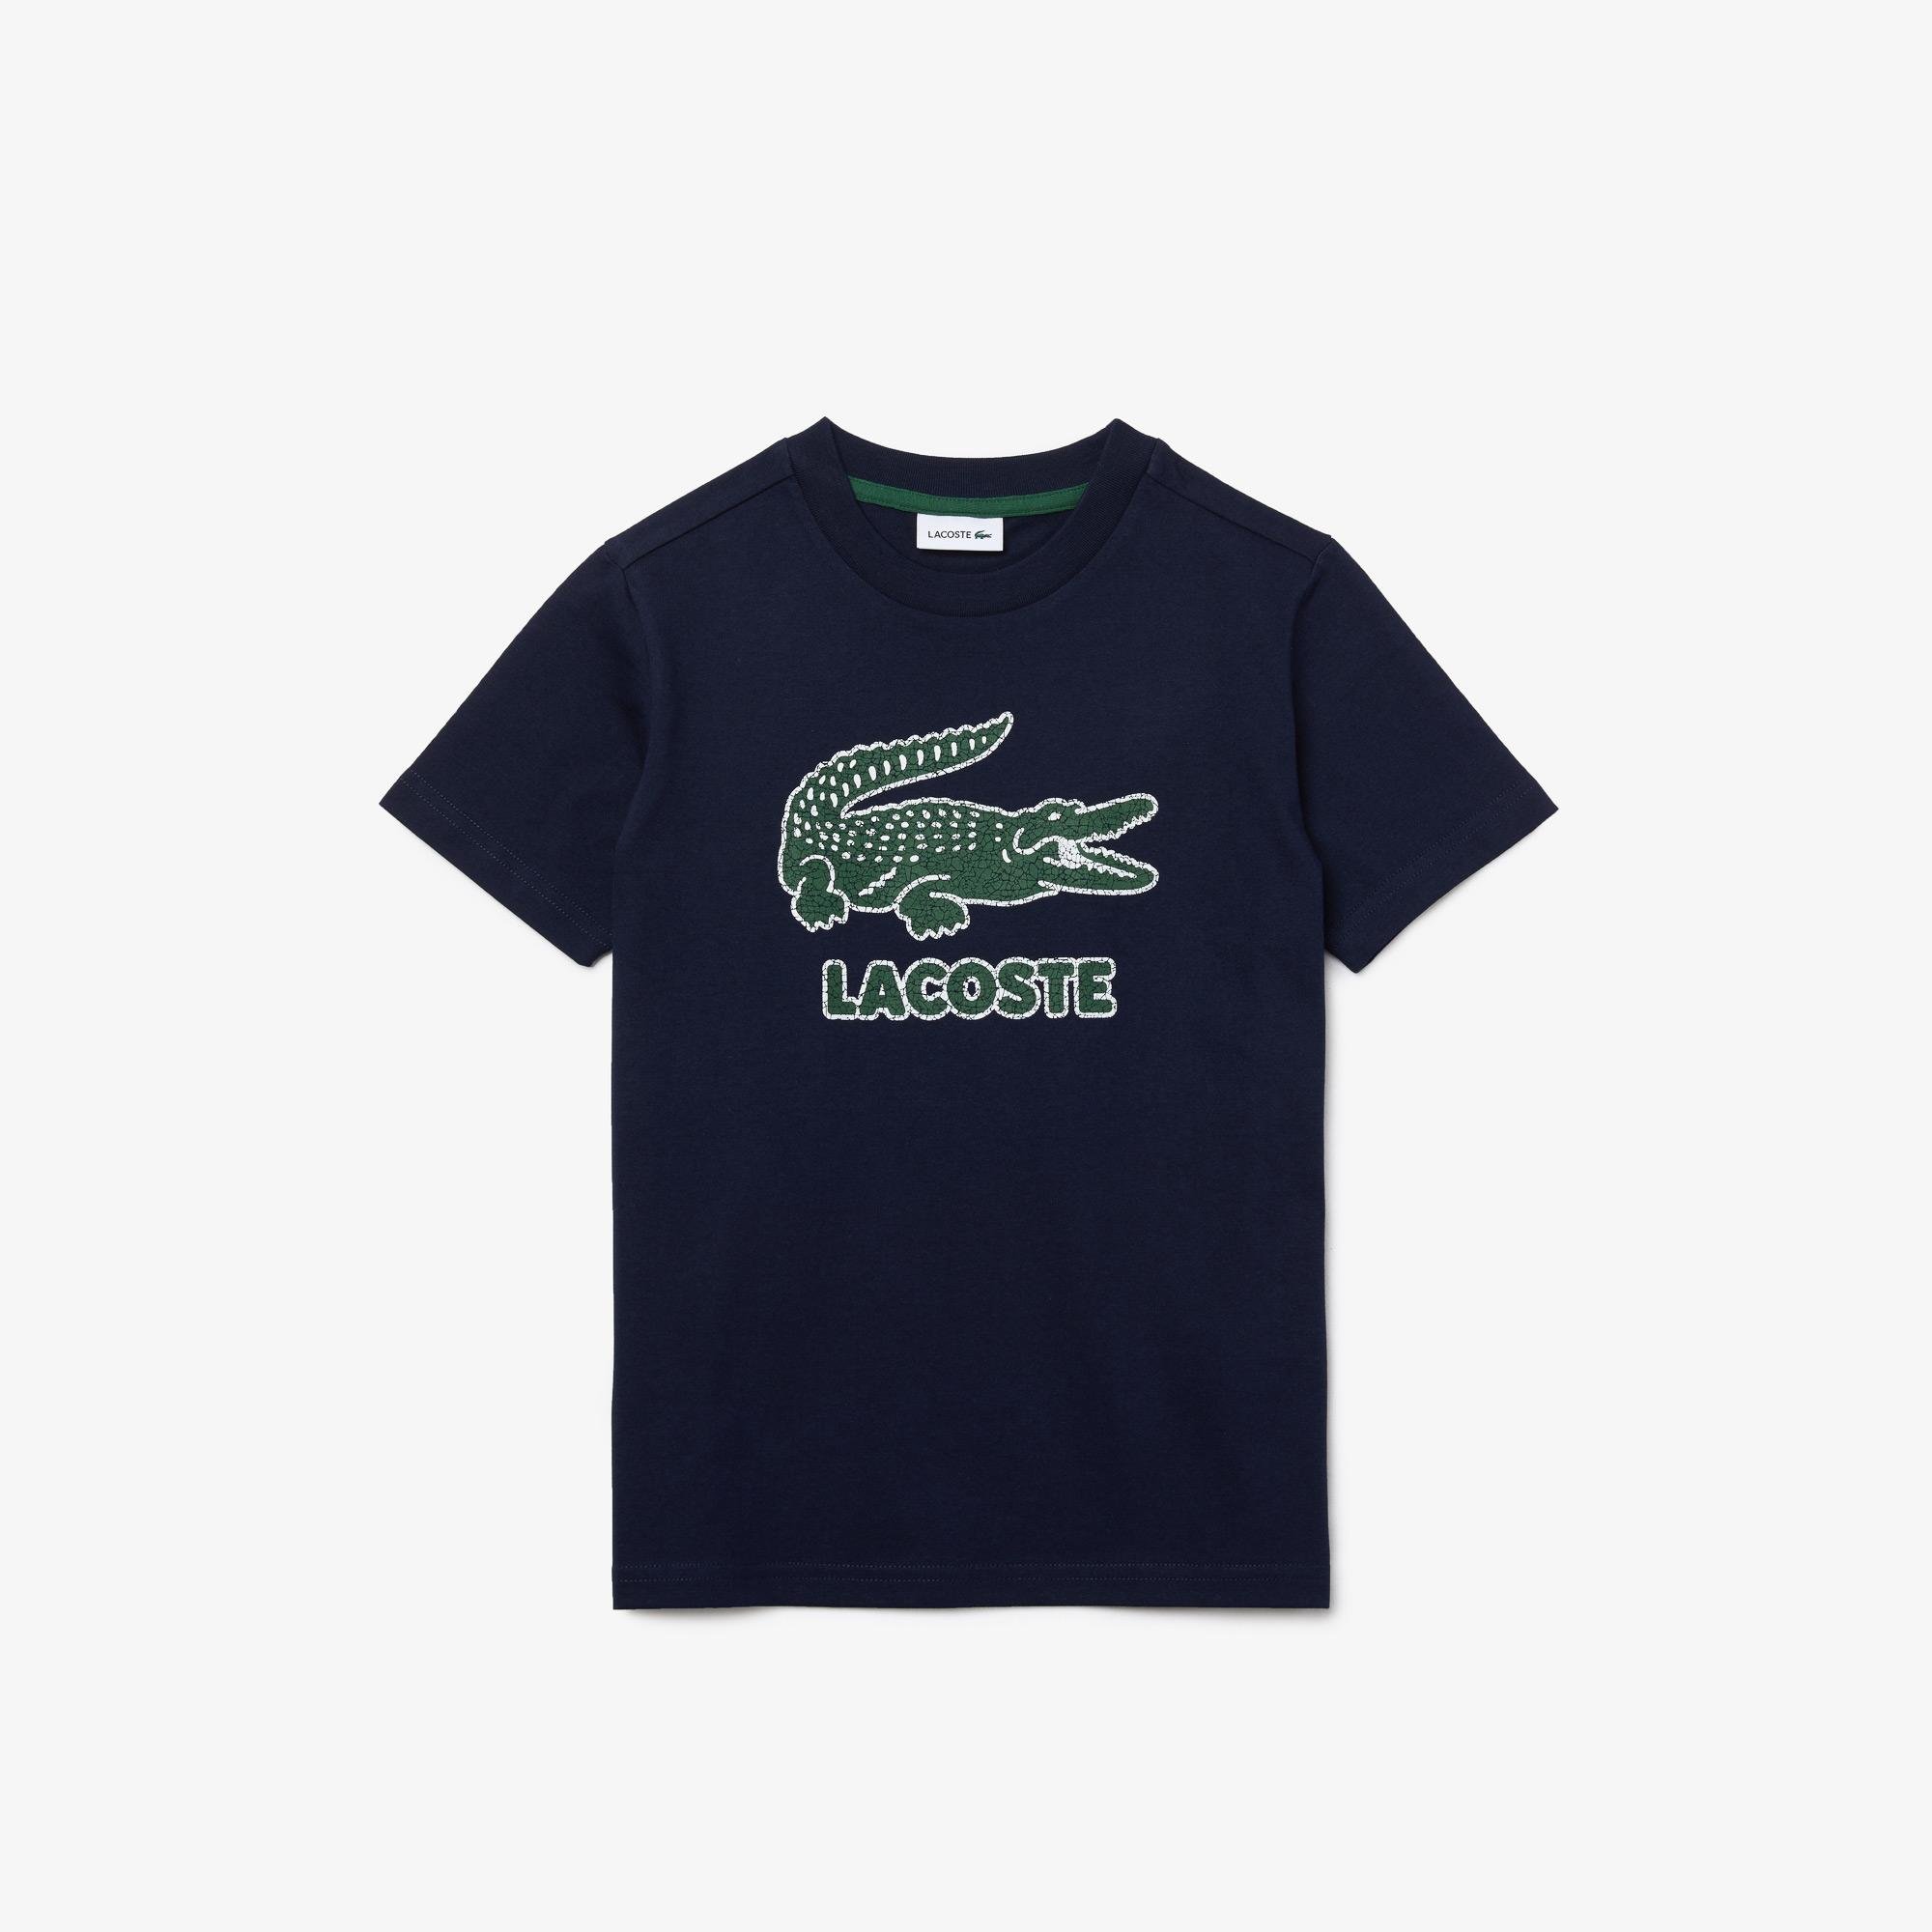 Lacoste Boy's T-Shirt